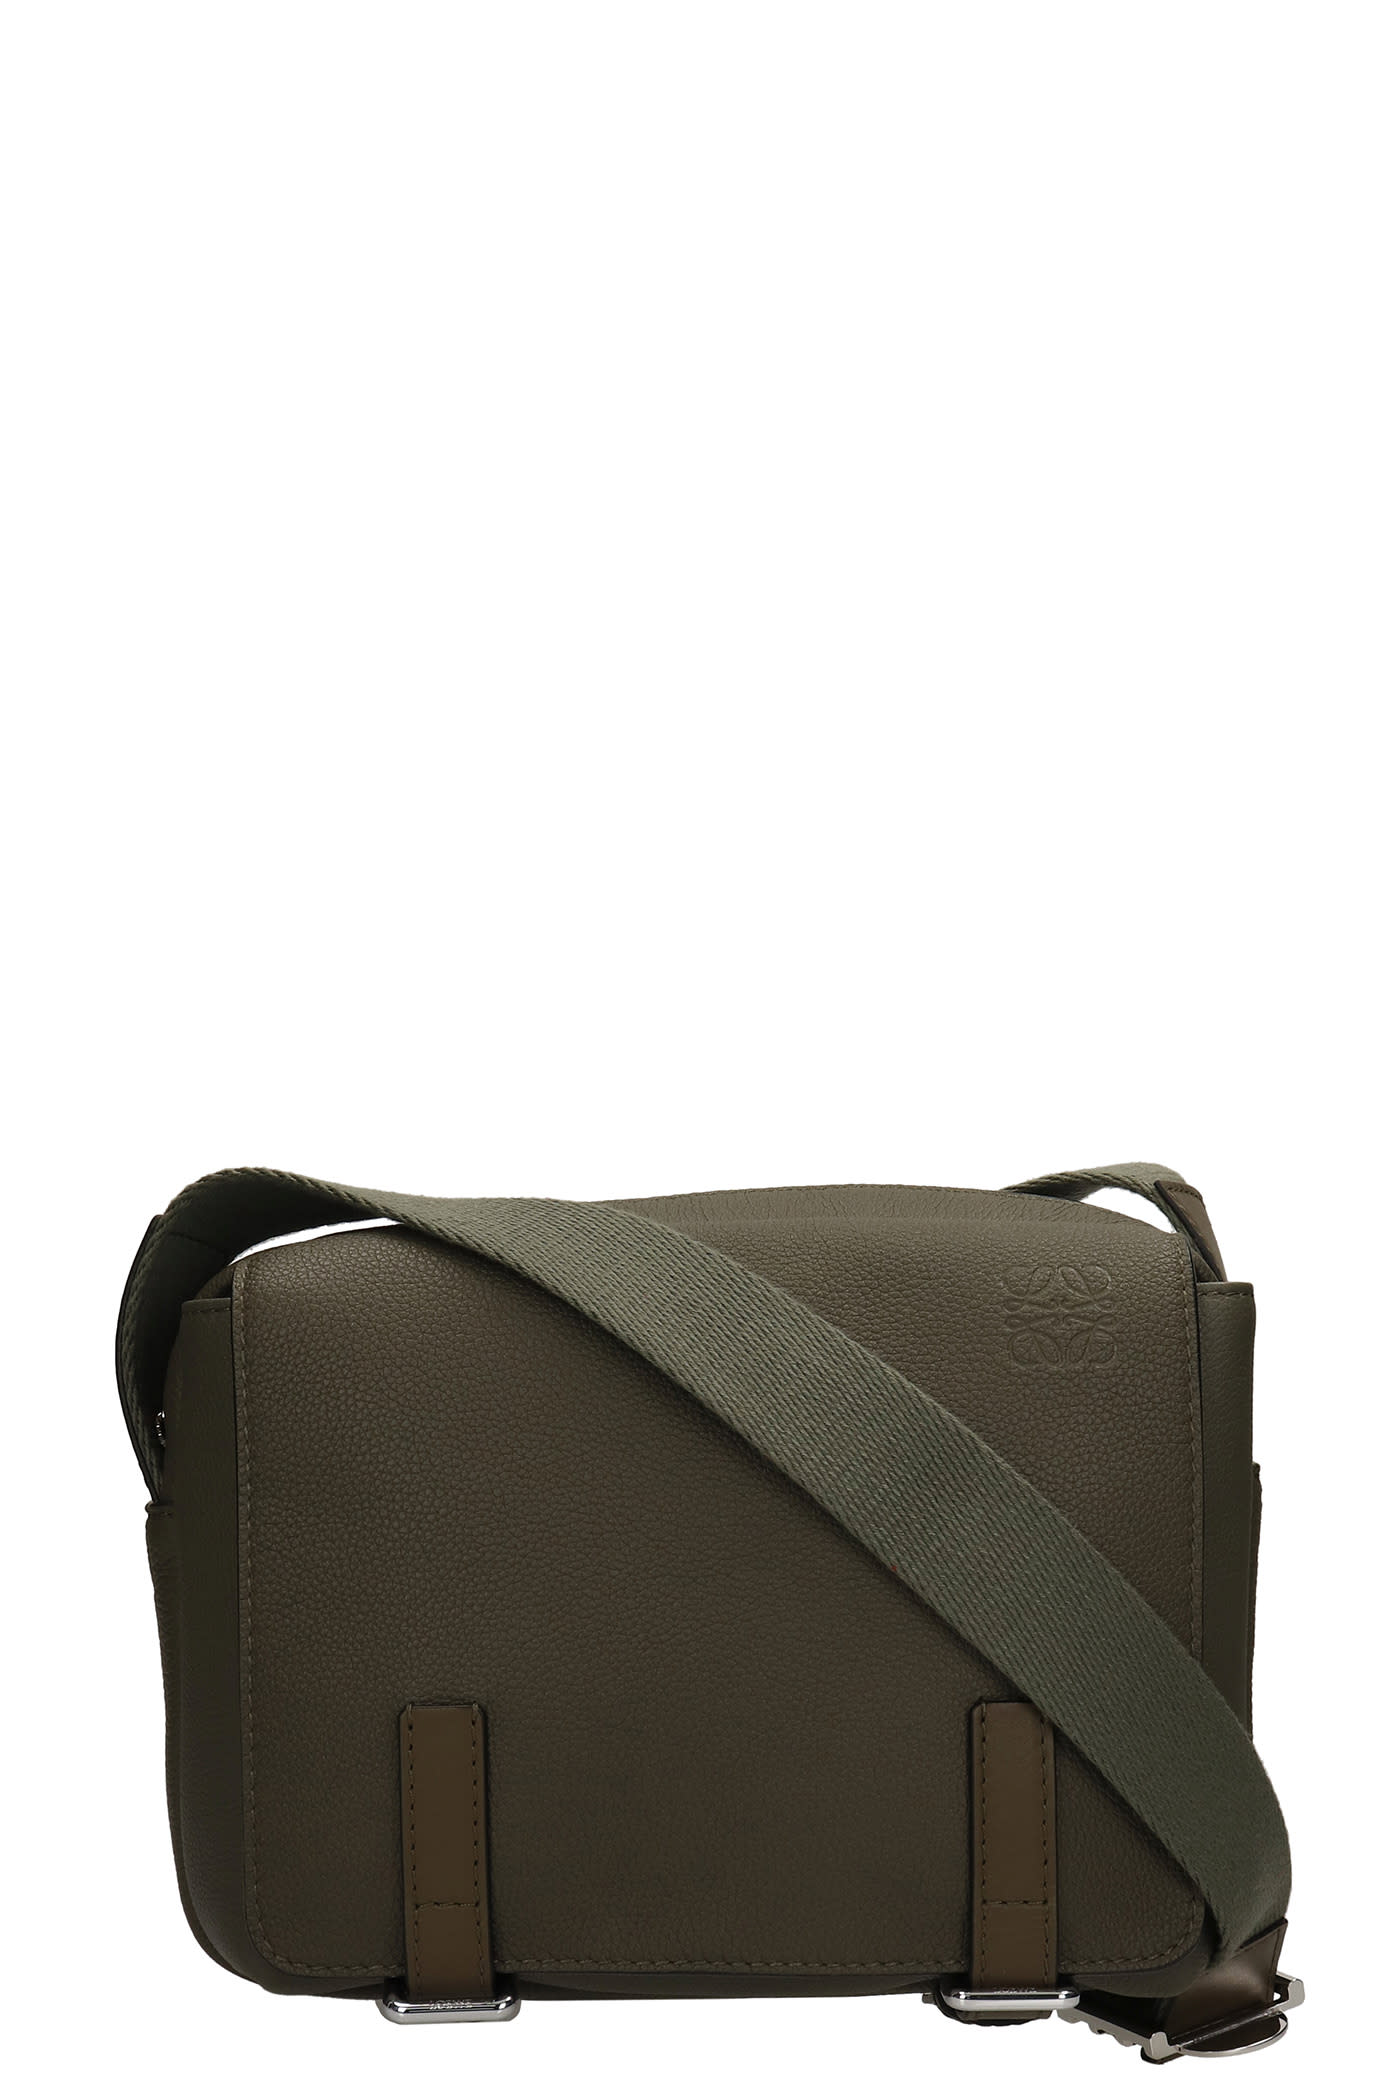 Loewe Shoulder Bag In Green Leather